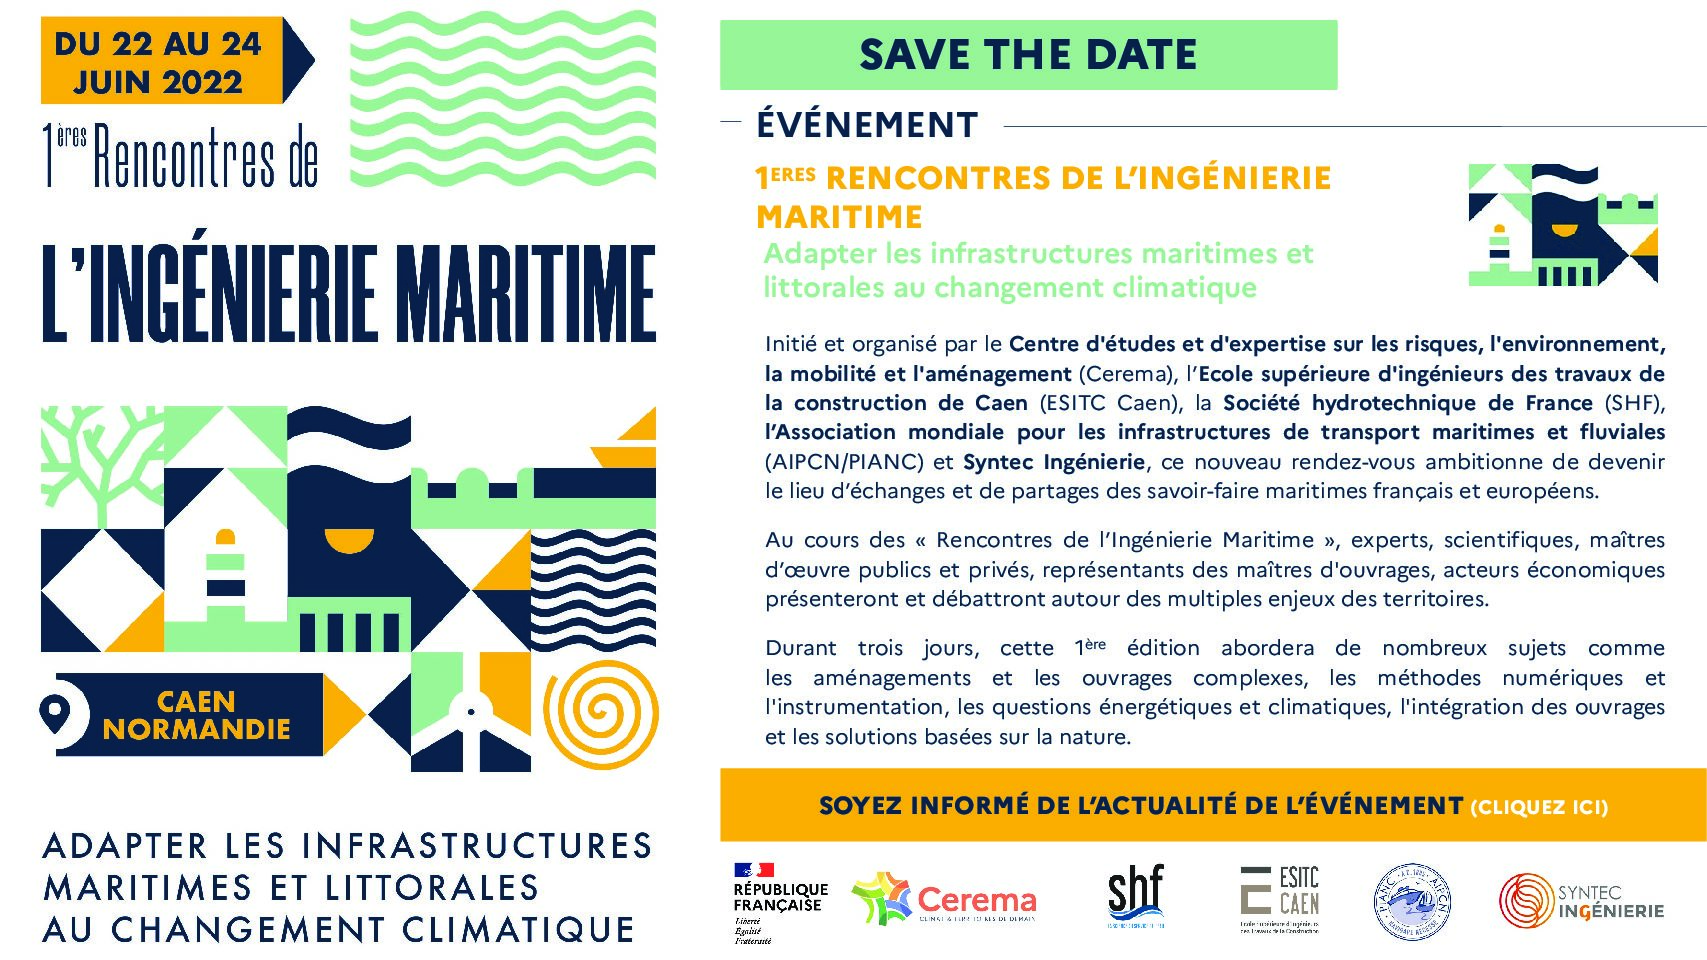 Rencontres de l’Ingénierie Maritime 2022 – ESITC Caen – Save the date